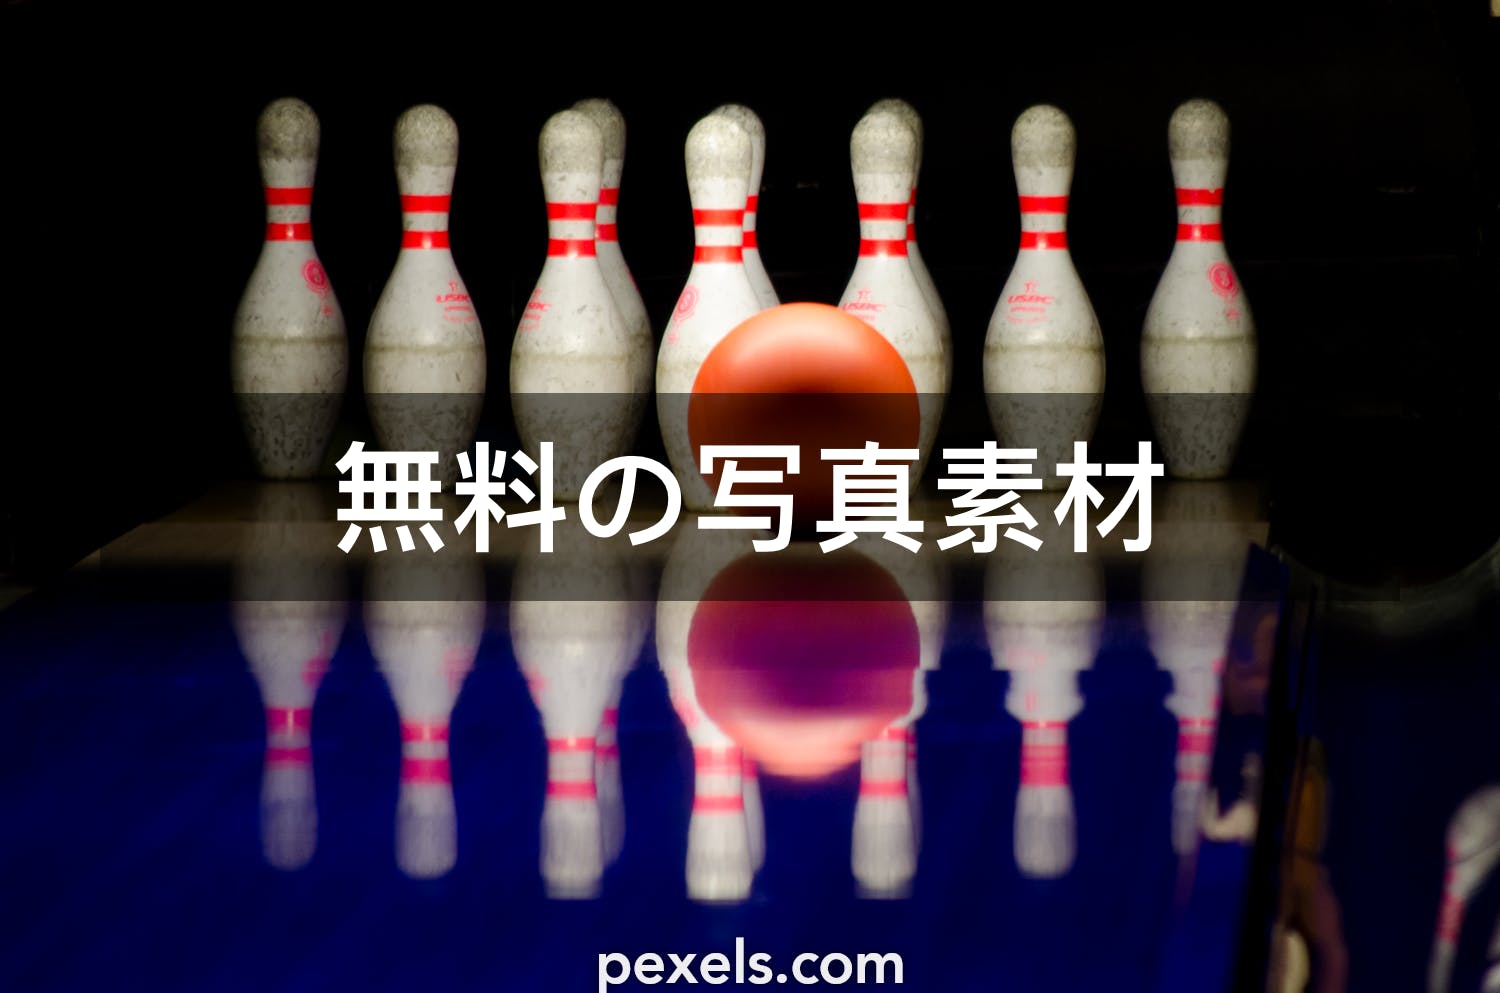 10 ボウリングと一致する写真 Pexels 無料の写真素材